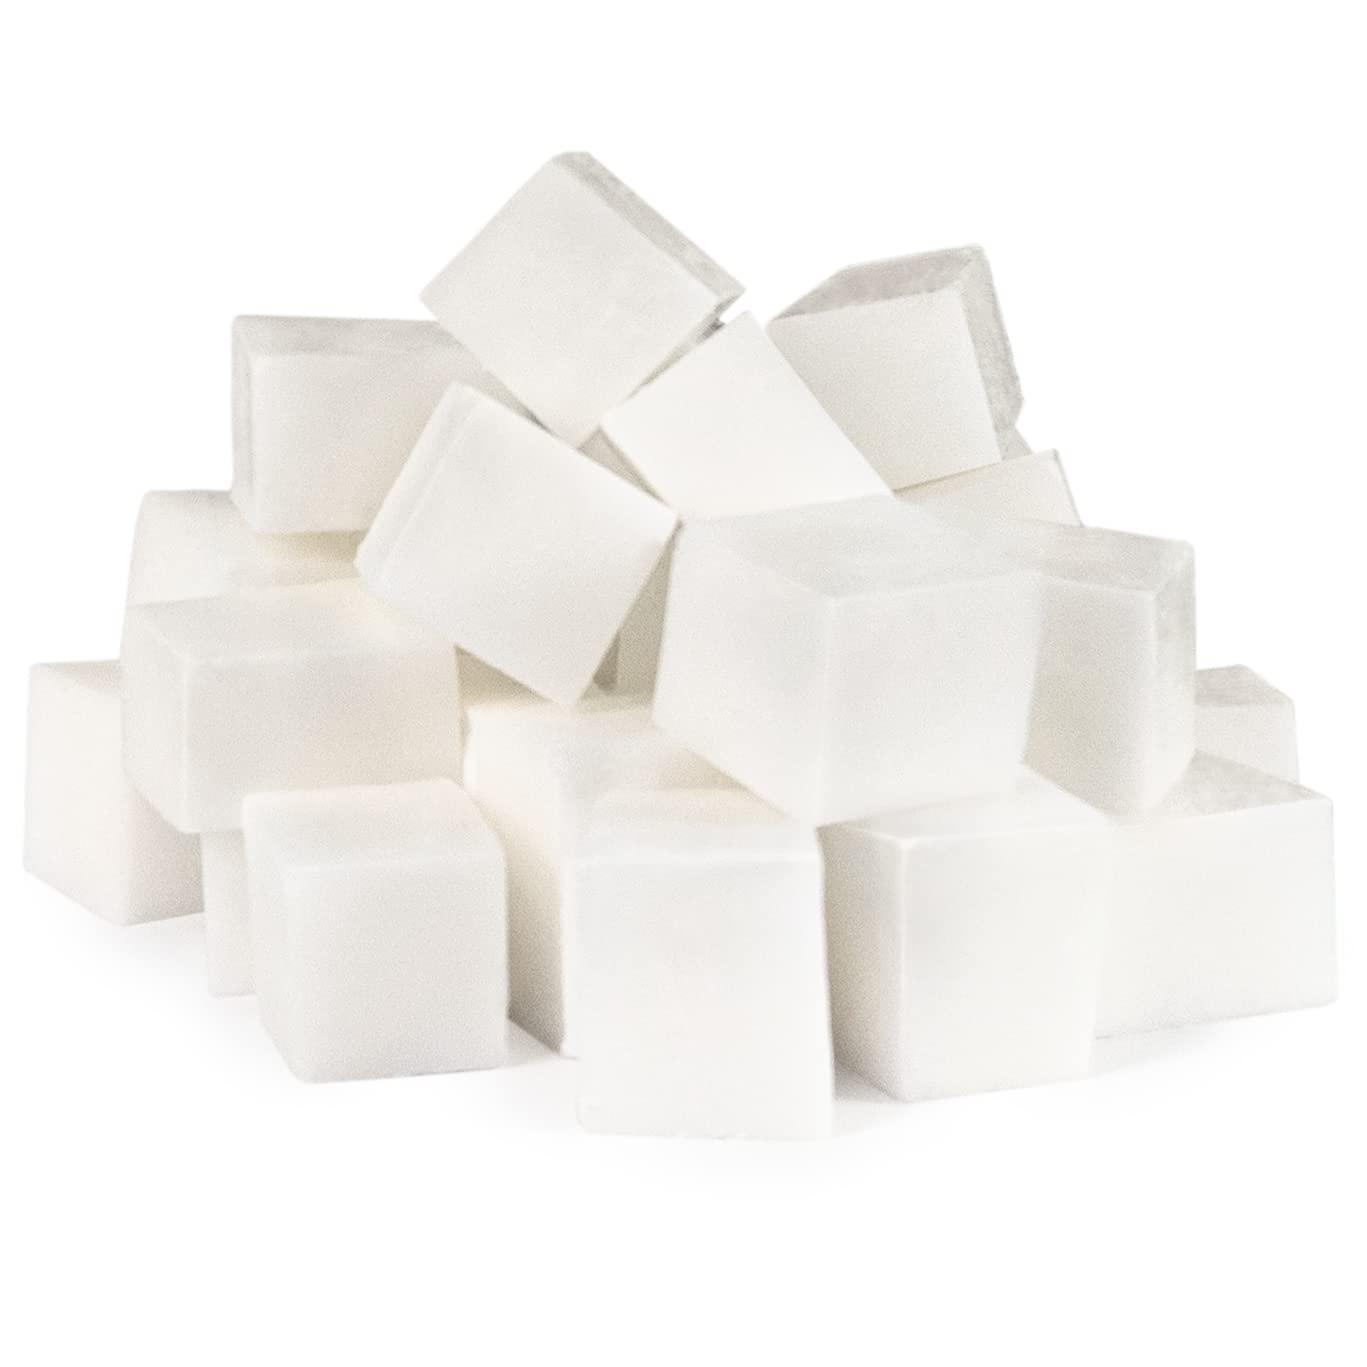 2,5,10,25 LB - Coconut Milk Glycerin Soap Base by Velona SLS/SLES